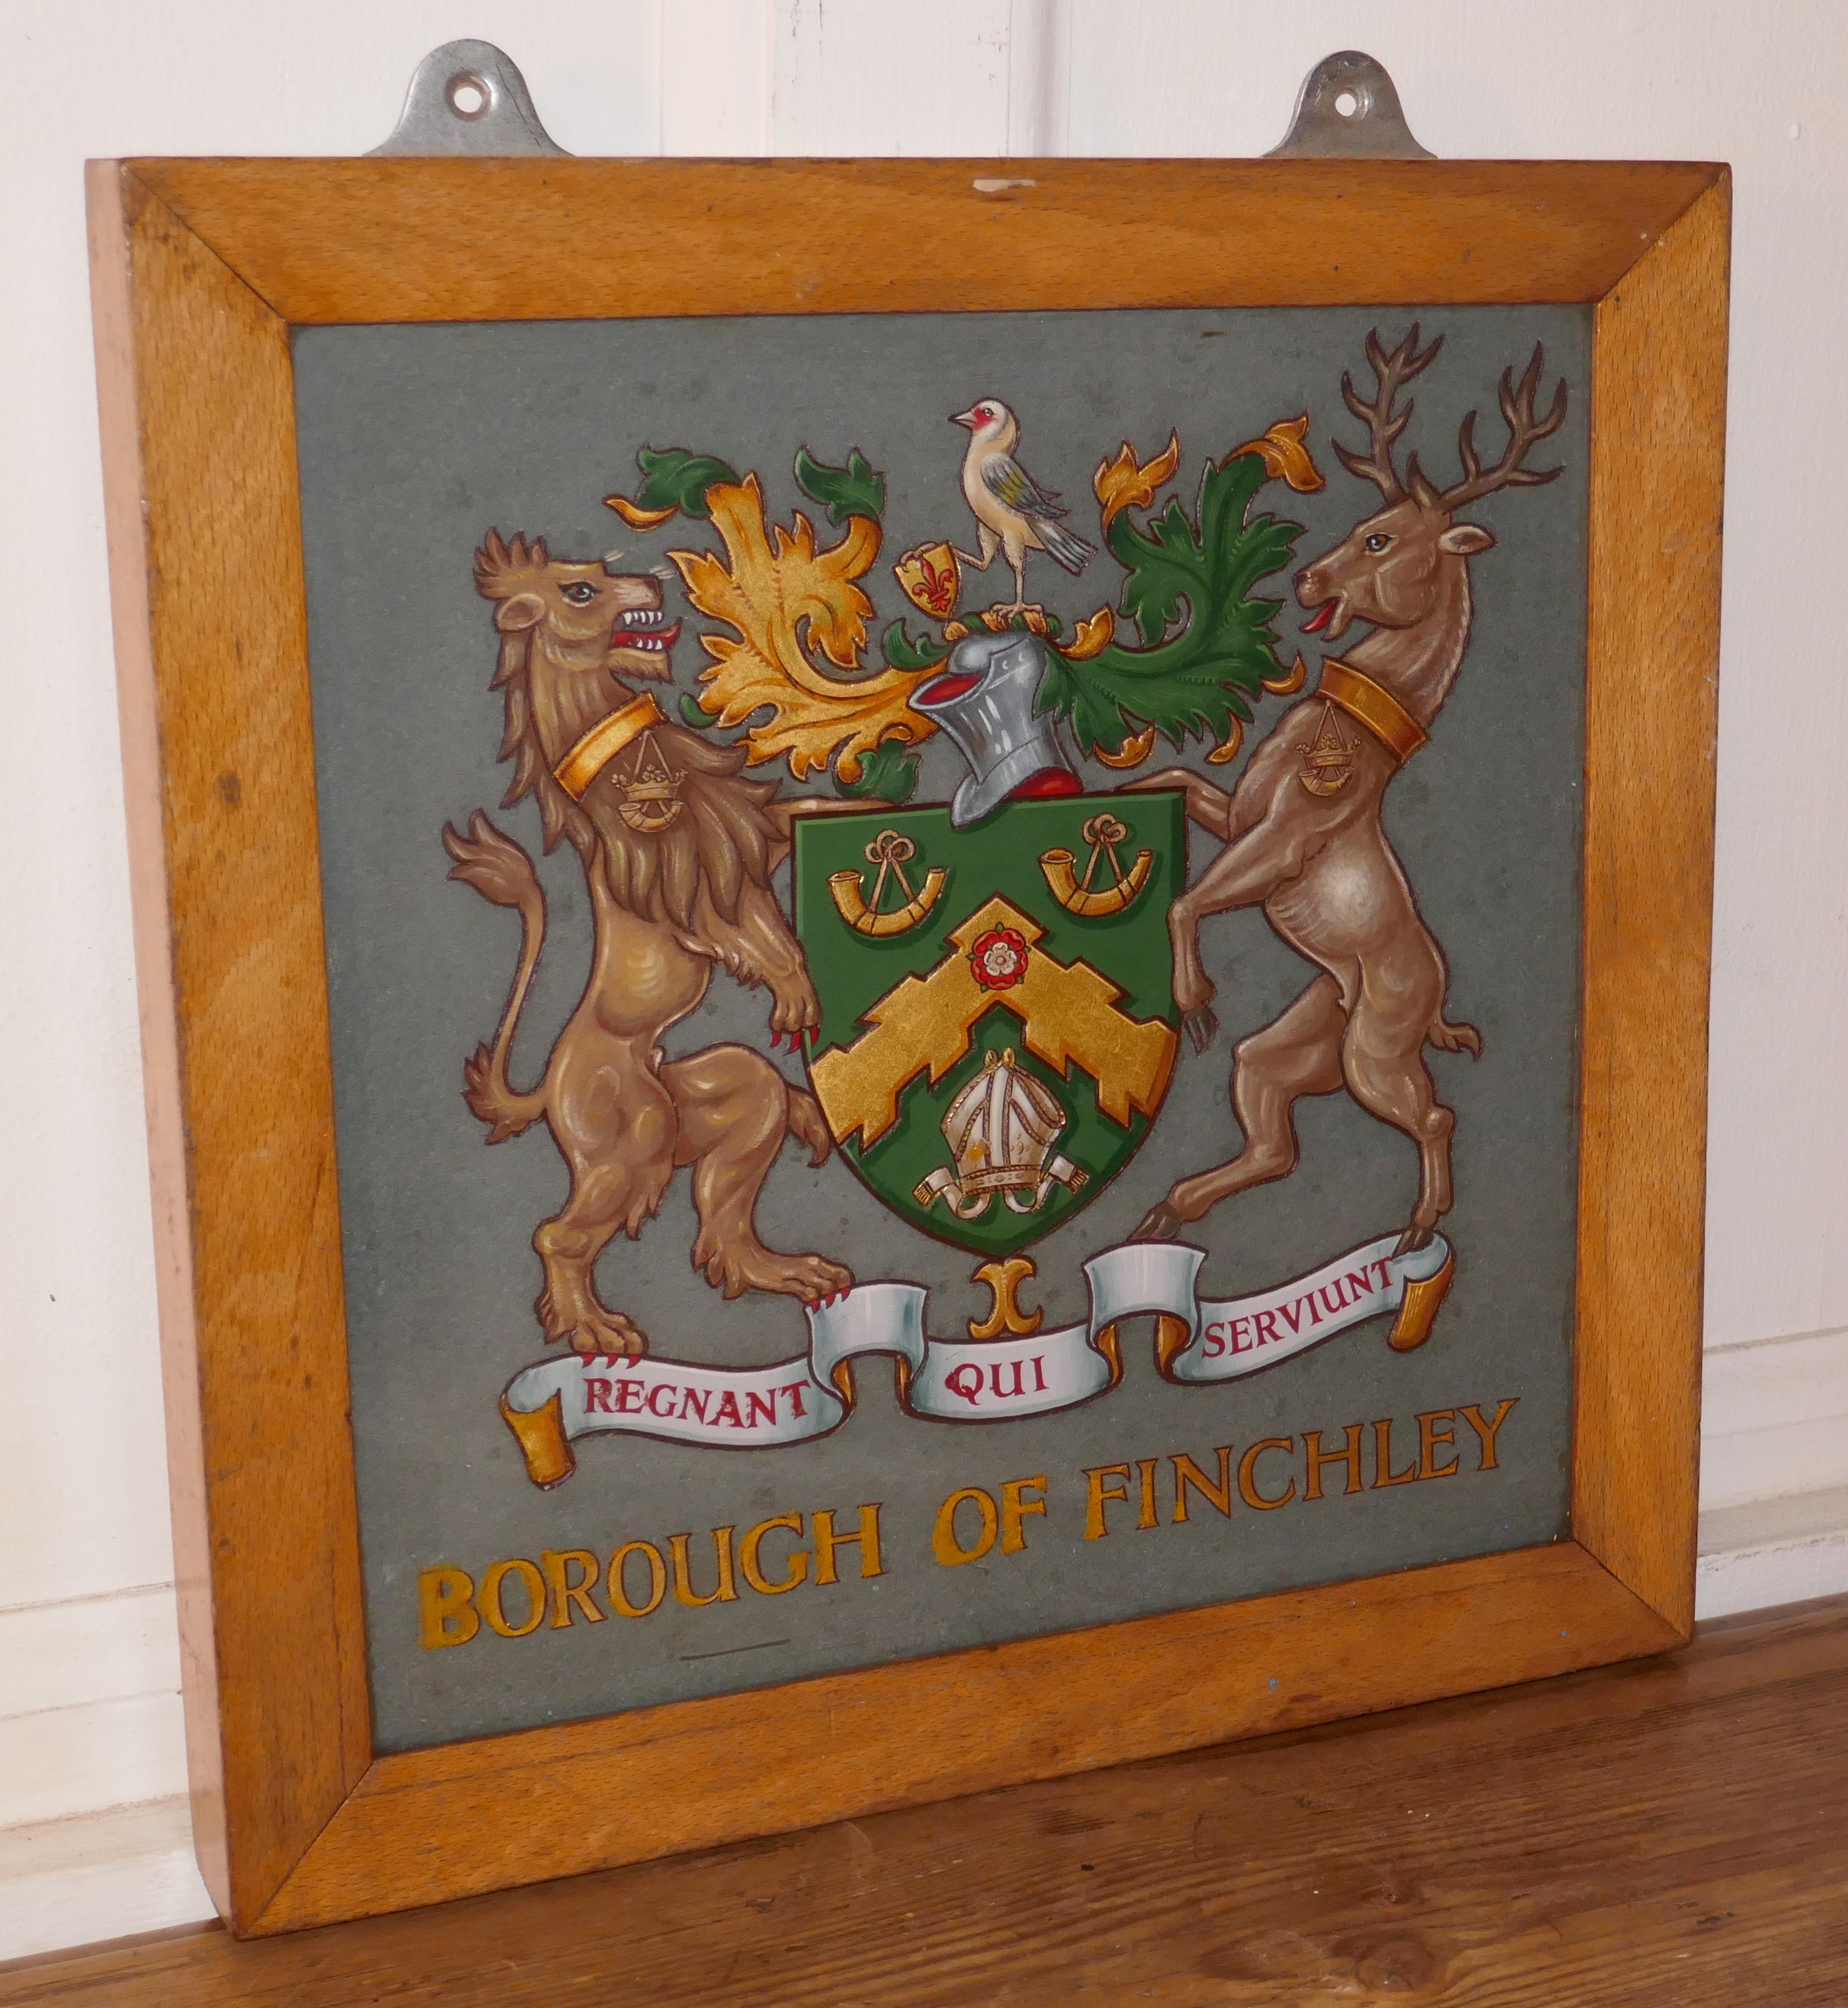 Armoiries héraldiques encadrées et peintes sur une ardoise provenant des armoiries de Borough of Finchley.



Le blason est tridimensionnel, il a été sculpté, peint et doré, et placé dans un cadre en hêtre doré.

L'ardoise et la peinture sont